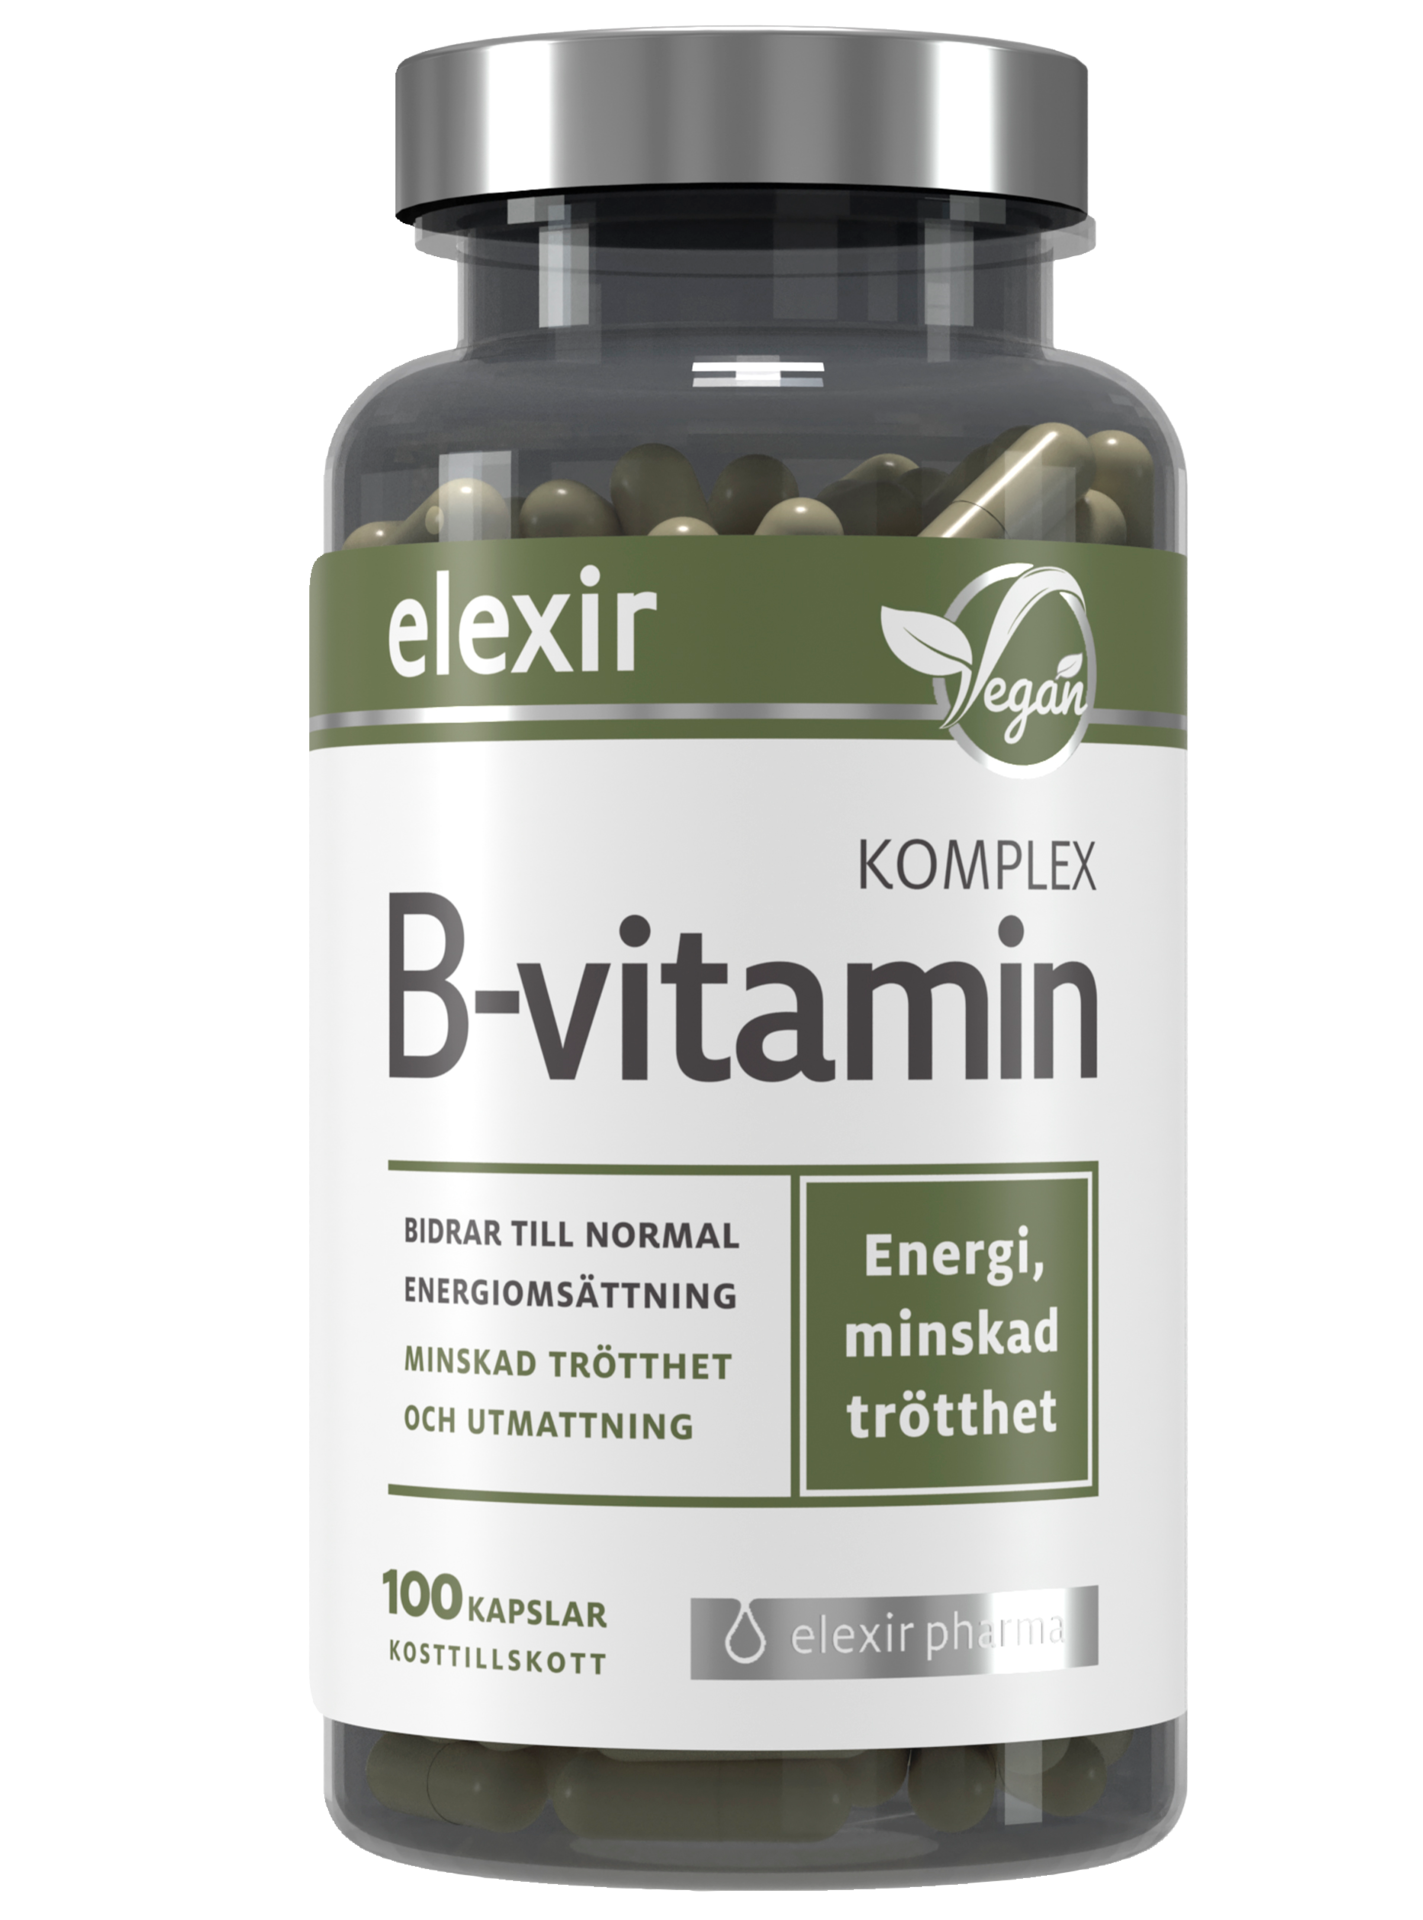 Elexir Pharma B-vitamin Komplex 100 kapslar